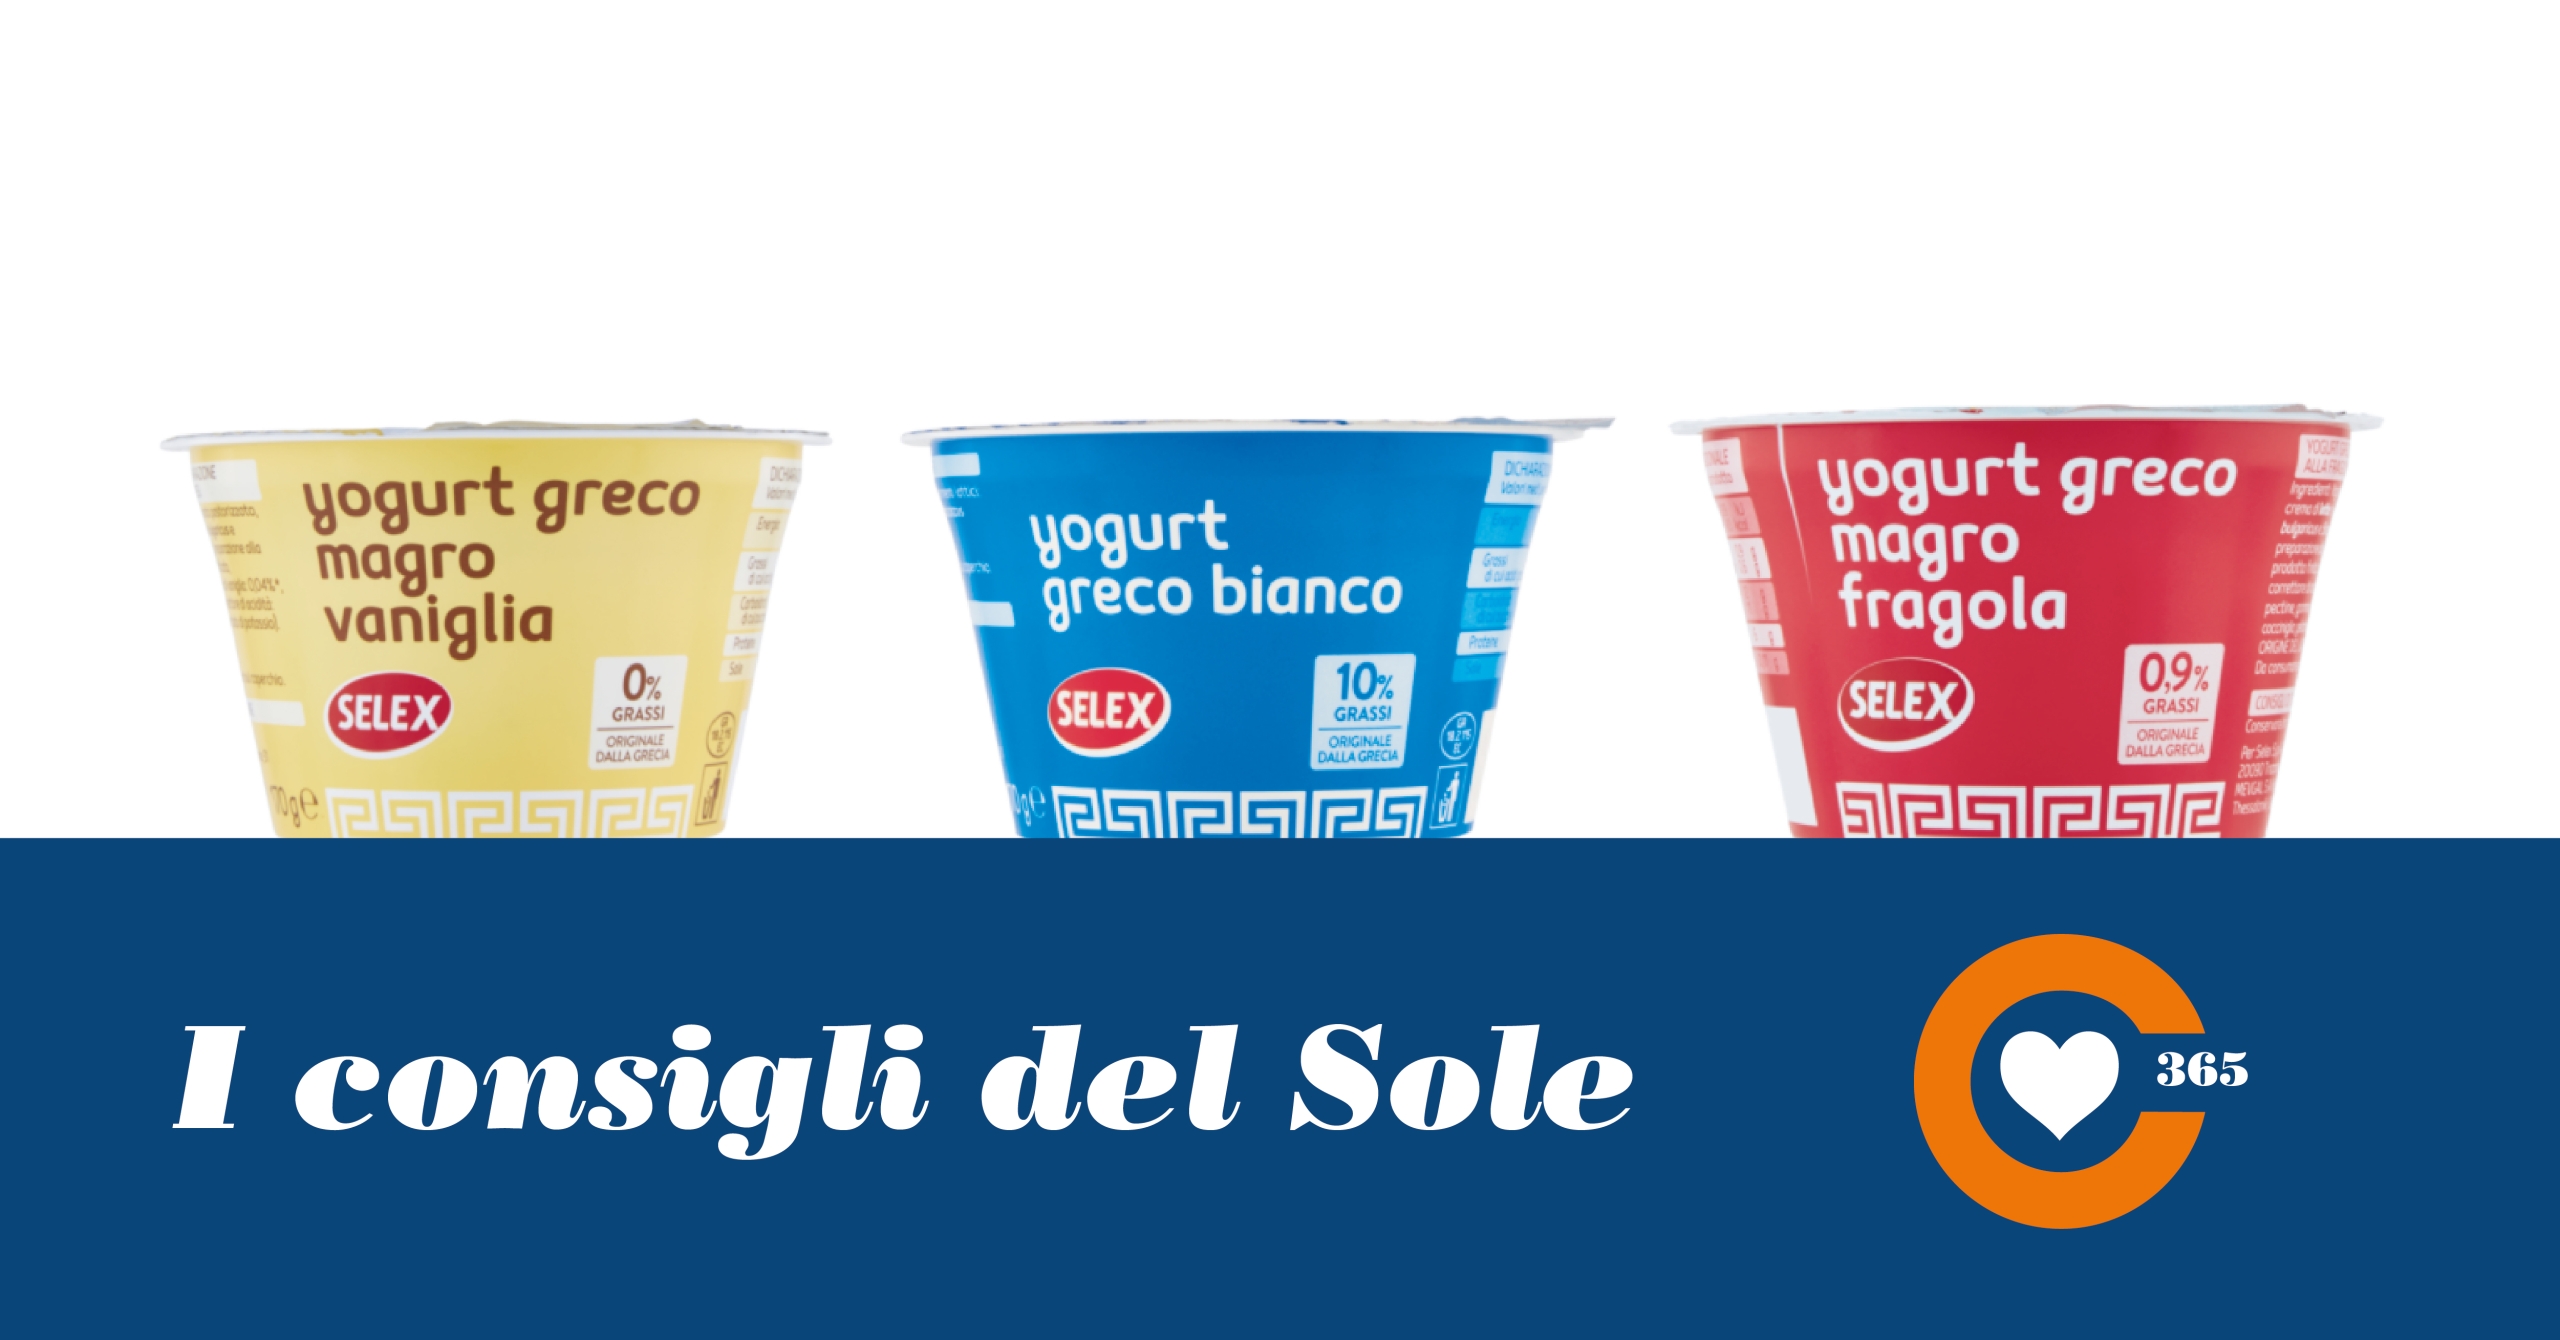 Yogurt greco - Sole 365